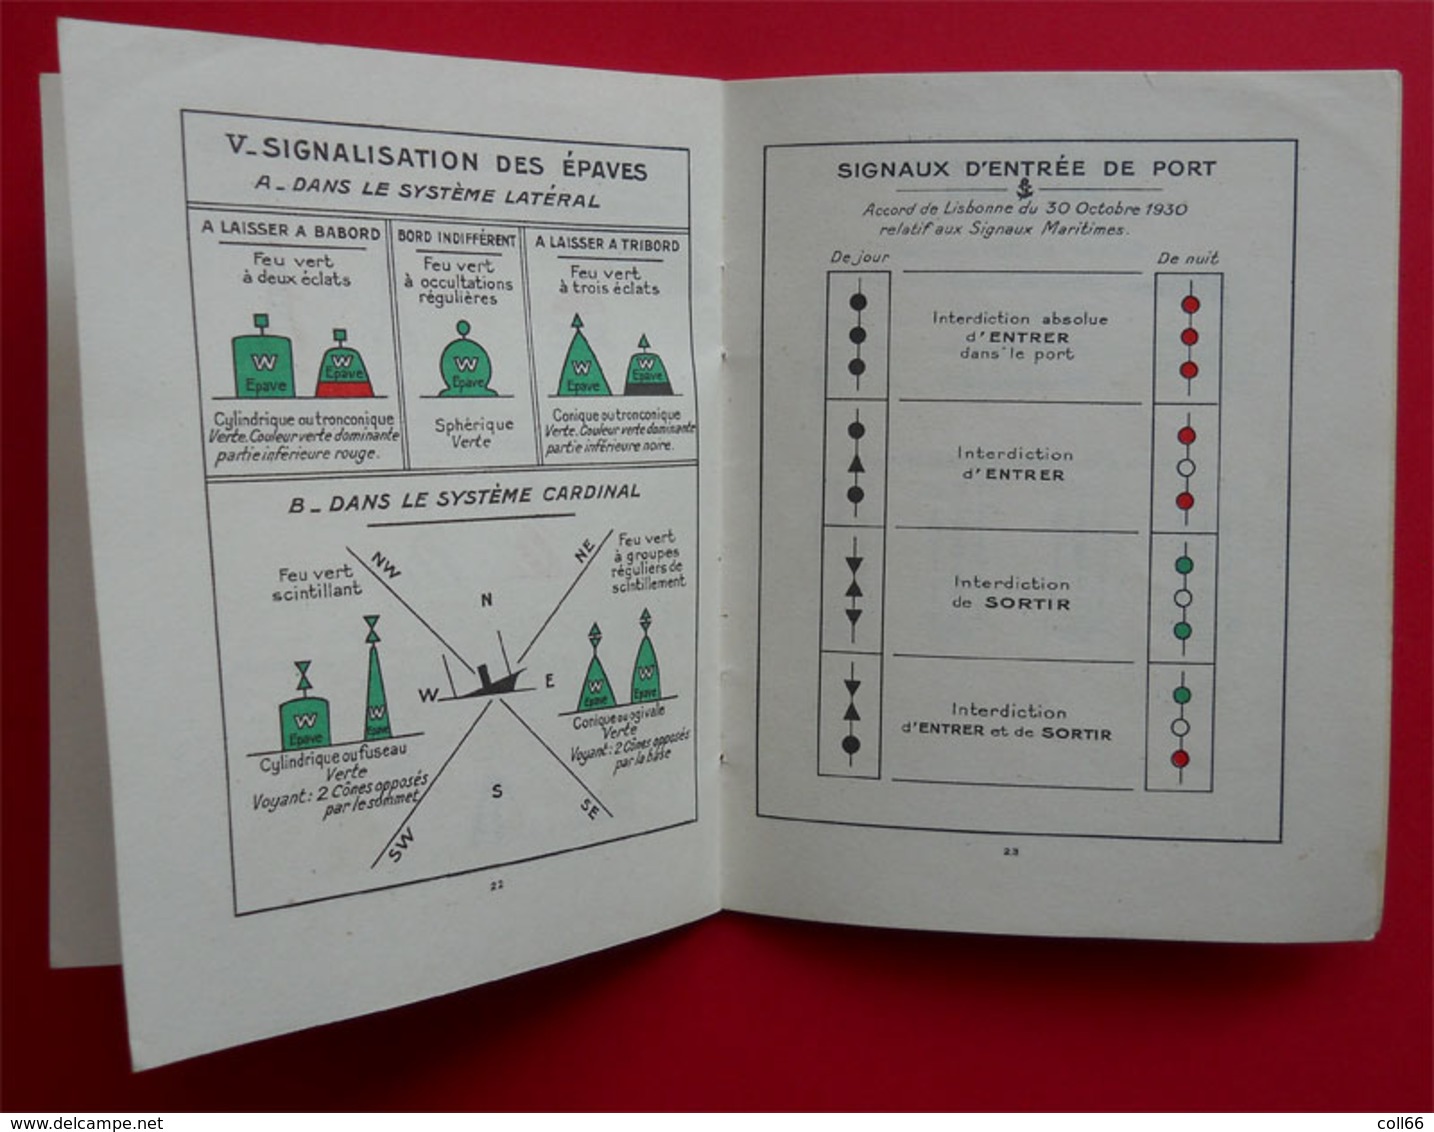 1953 Brochure Feux et signaux pour navigateurs nombreuses illustrations 32 pages édit Ozanne Paris illustré Paul Peron